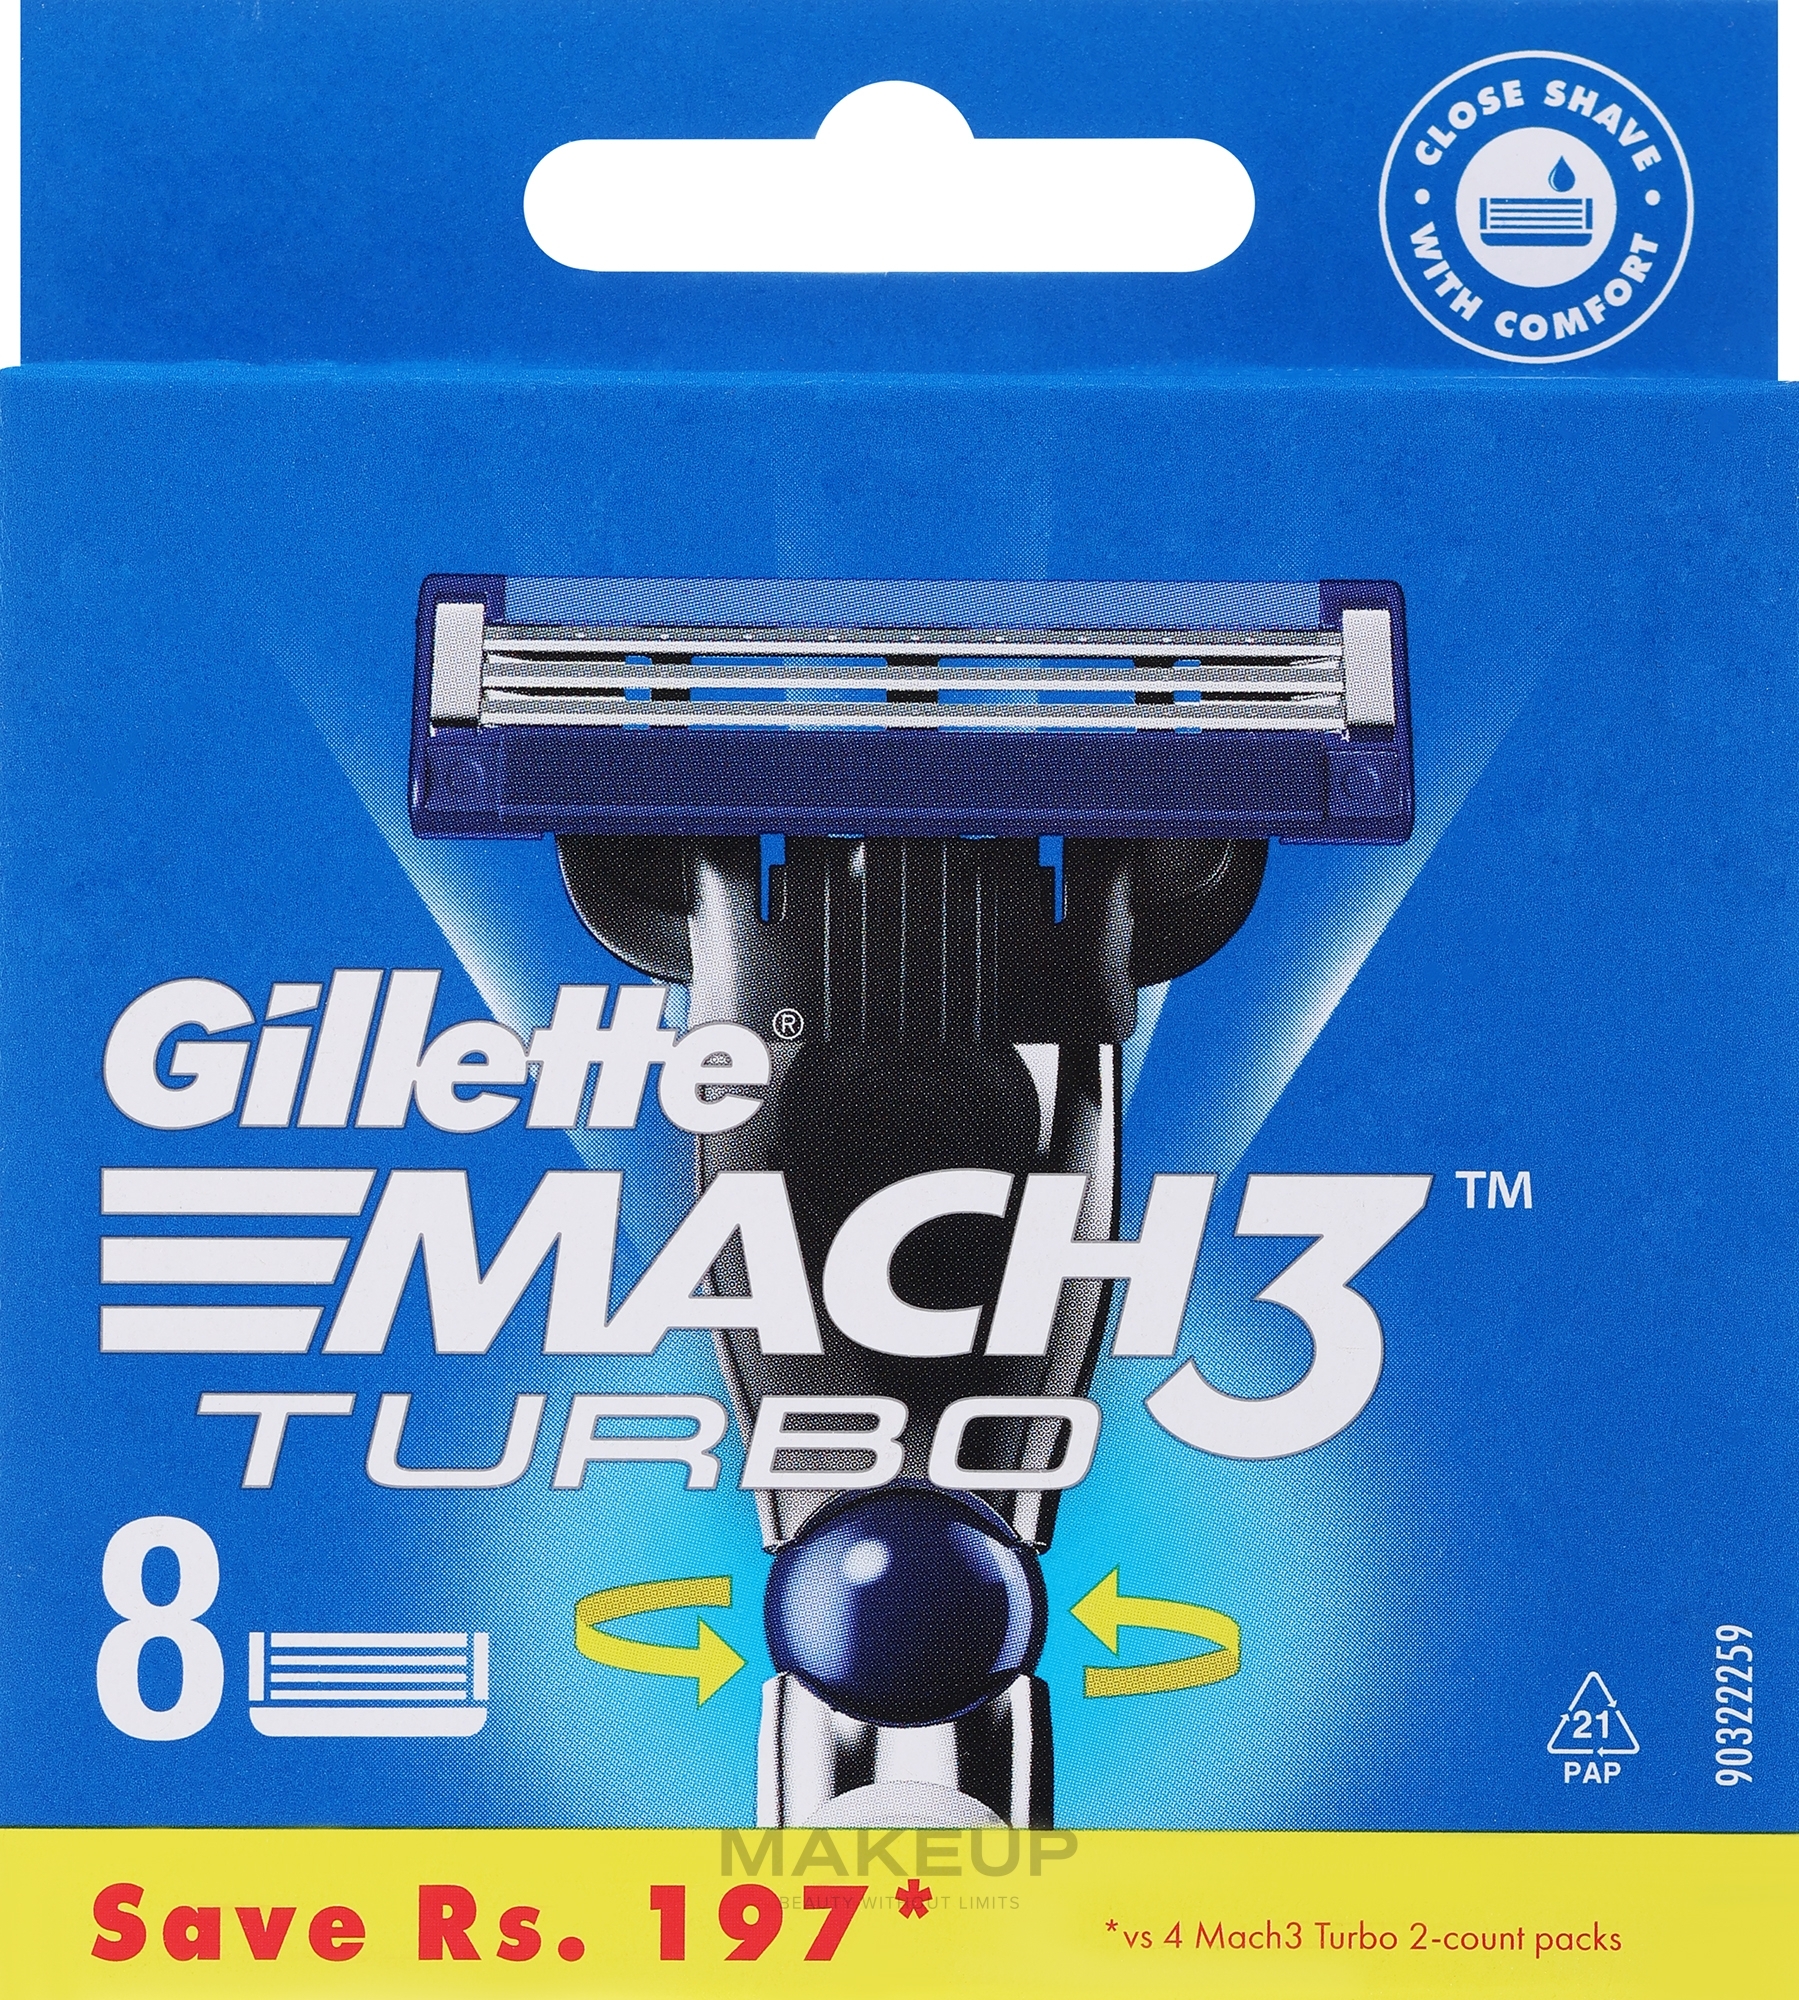 Сменные кассеты для бритья, 8 шт. - Gillette Mach3 Turbo — фото 8шт